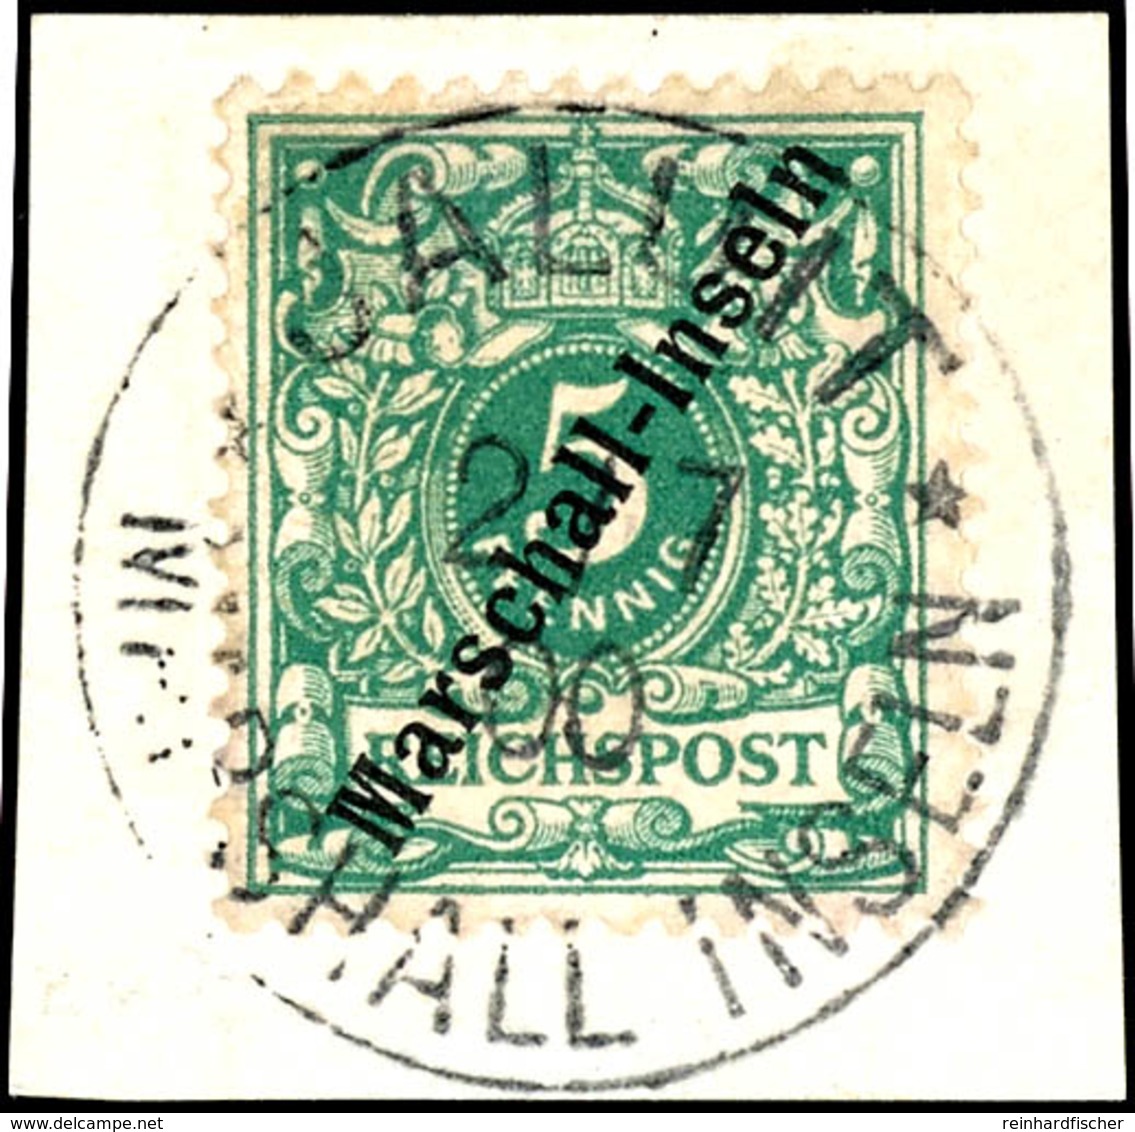 5 Pfennig Krone/Adler Mit Aufdruck "MARSCHALL-INSELN"  Tadelloses Briefstück Mit Stempel "JALUIT MARSHALL-INSELN", Sorte - Marshall-Inseln